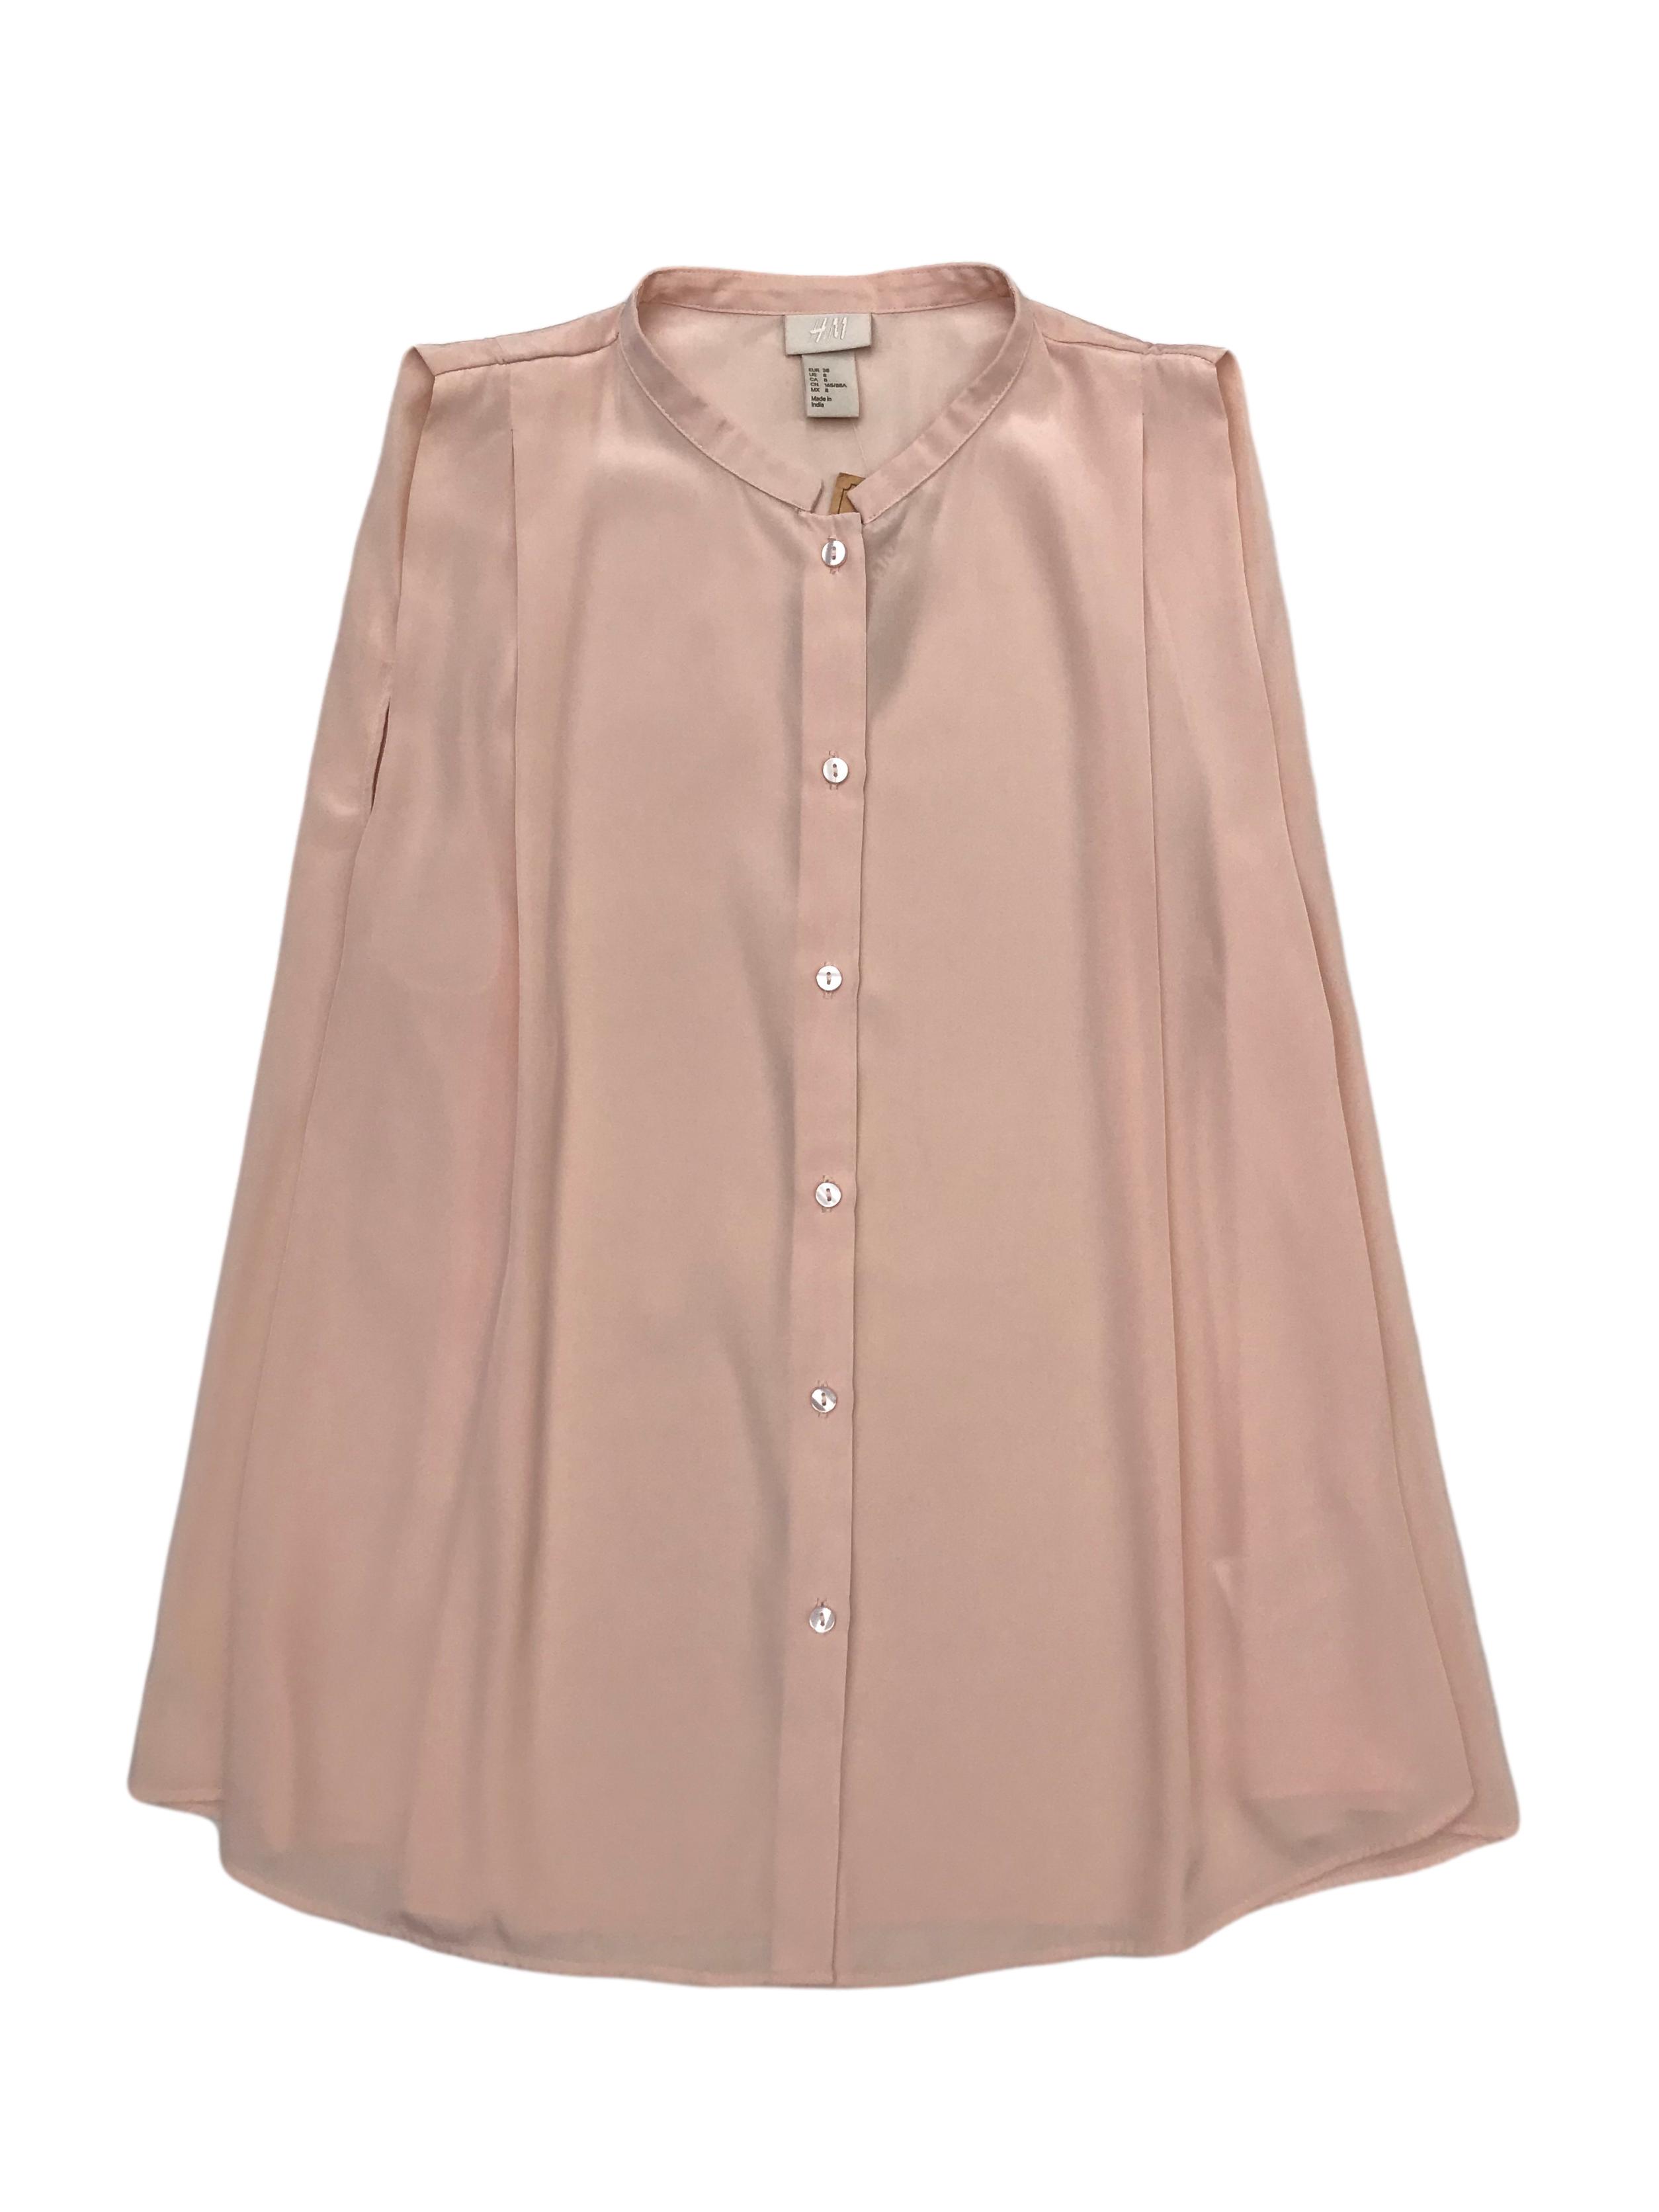 Blusa H&M palo rosa satinado con botones delanteros y pliegues en los hombros. Es suelta